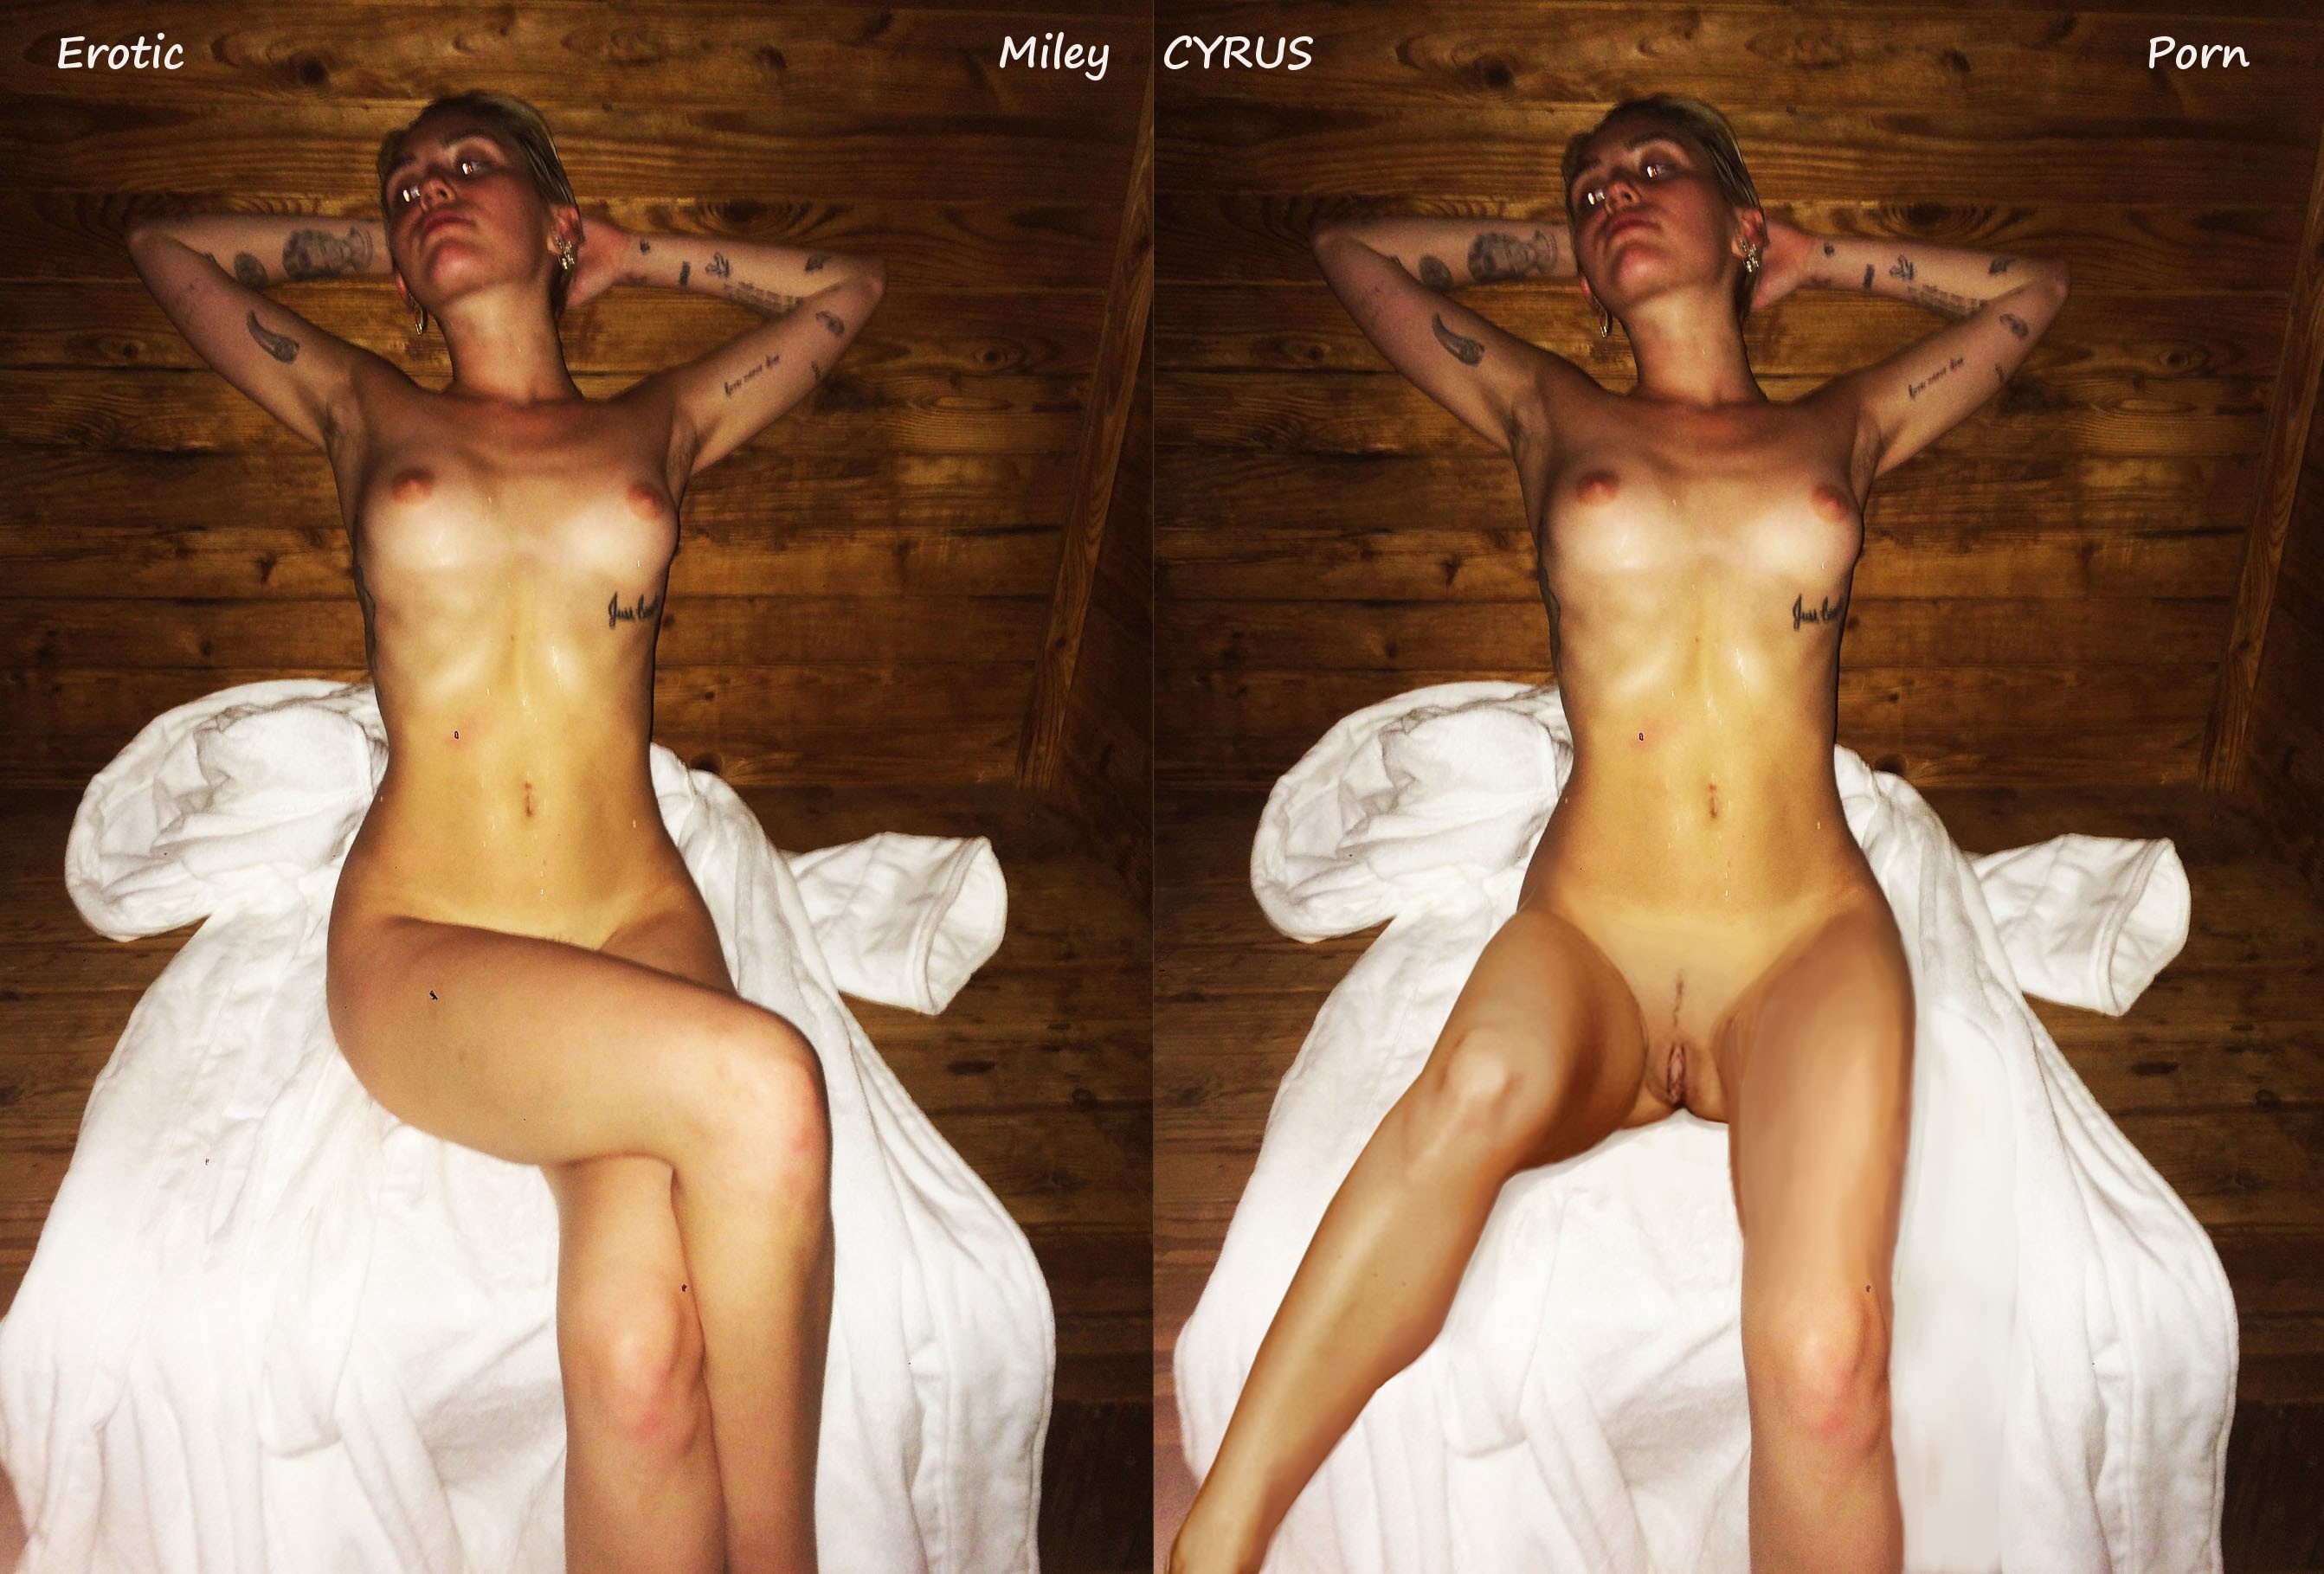 Miley cyrus nude bathroom photo